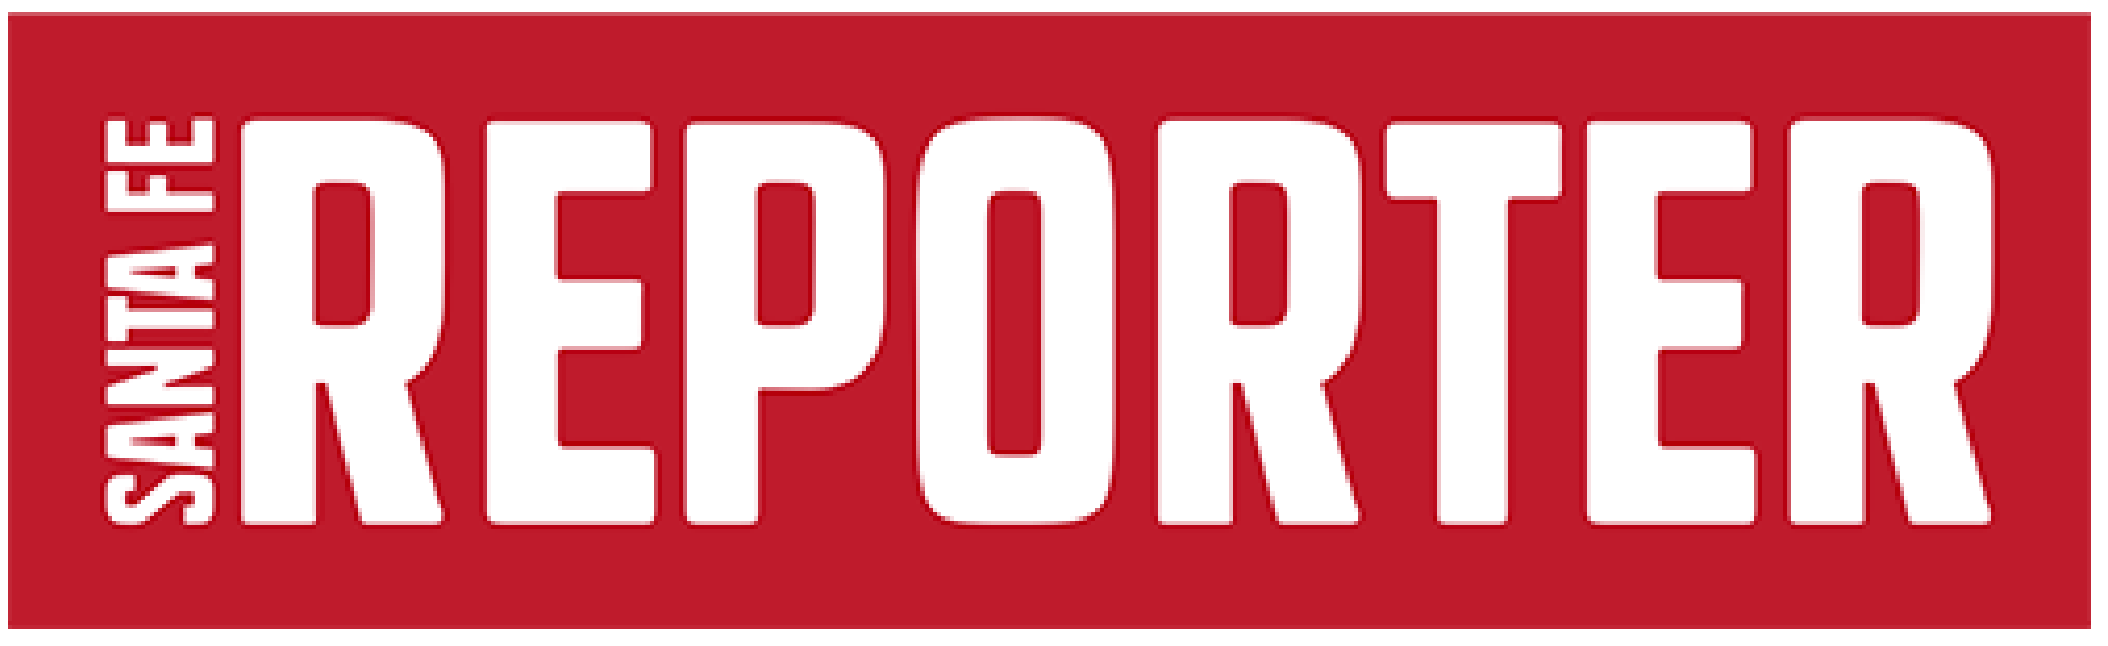 Santa Fe Reporter logo